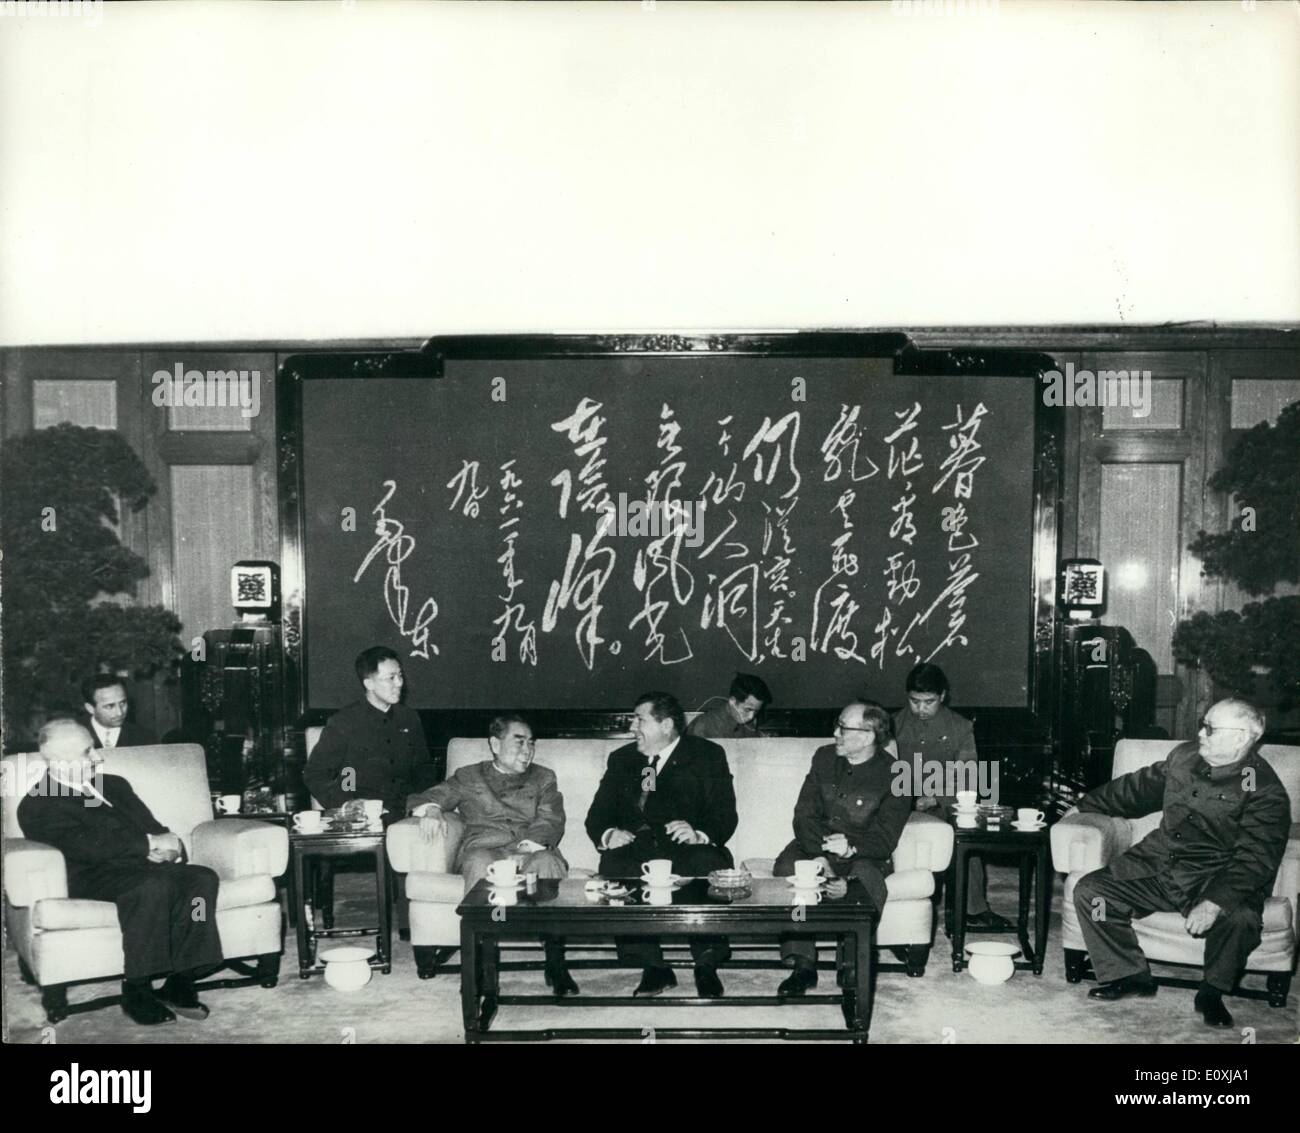 19 janvier 1967 - 19-1-67 sous un poème de Mao Tse Tung. Cette photo a été prise le 14 janvier à Pékin. Chou En Lai, qui apparaît dans le meilleur de l'humour, reçoit une délégation militaire albanais. Derrière lui un grand tableau noir sur lequel un poème composé par Mao Tse Tung est écrit de sa propre main. Photo montre : Chou En Lai assis sous le poème composé par Mao Tse Tung. Banque D'Images